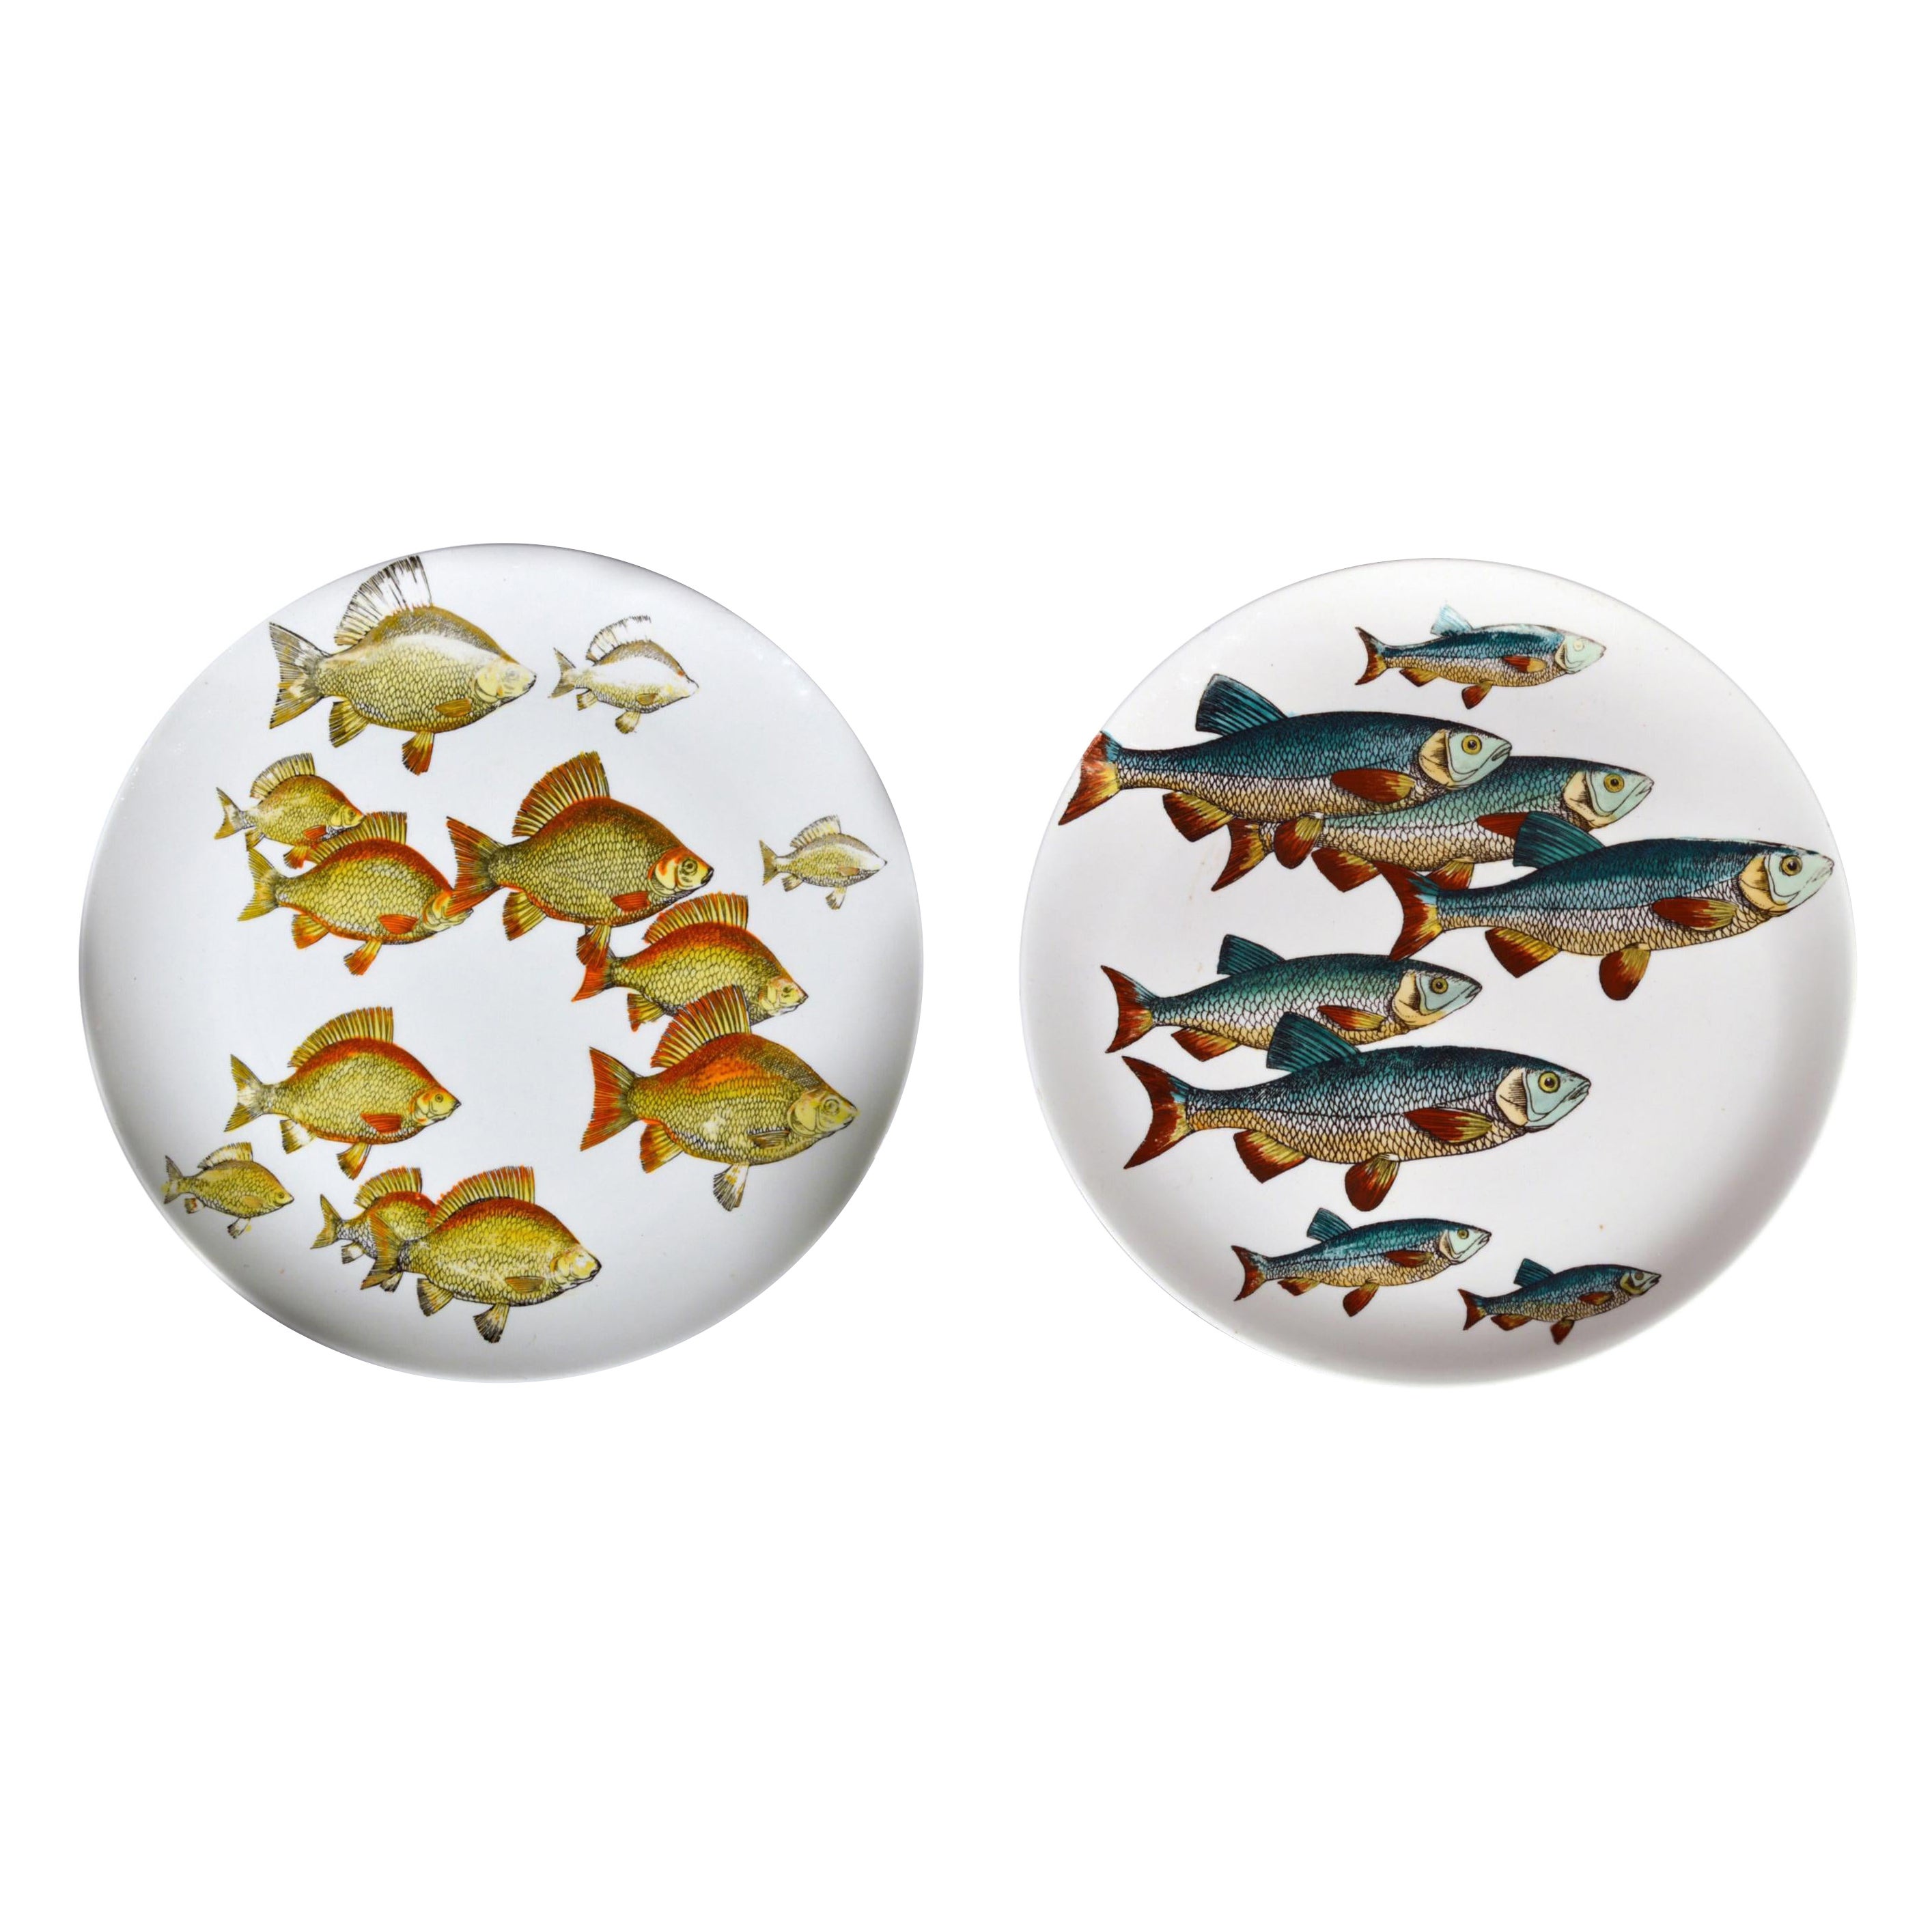 Assiettes à poisson en porcelaine Piero Fornasetti, motif Pesci ou Passage of Fish